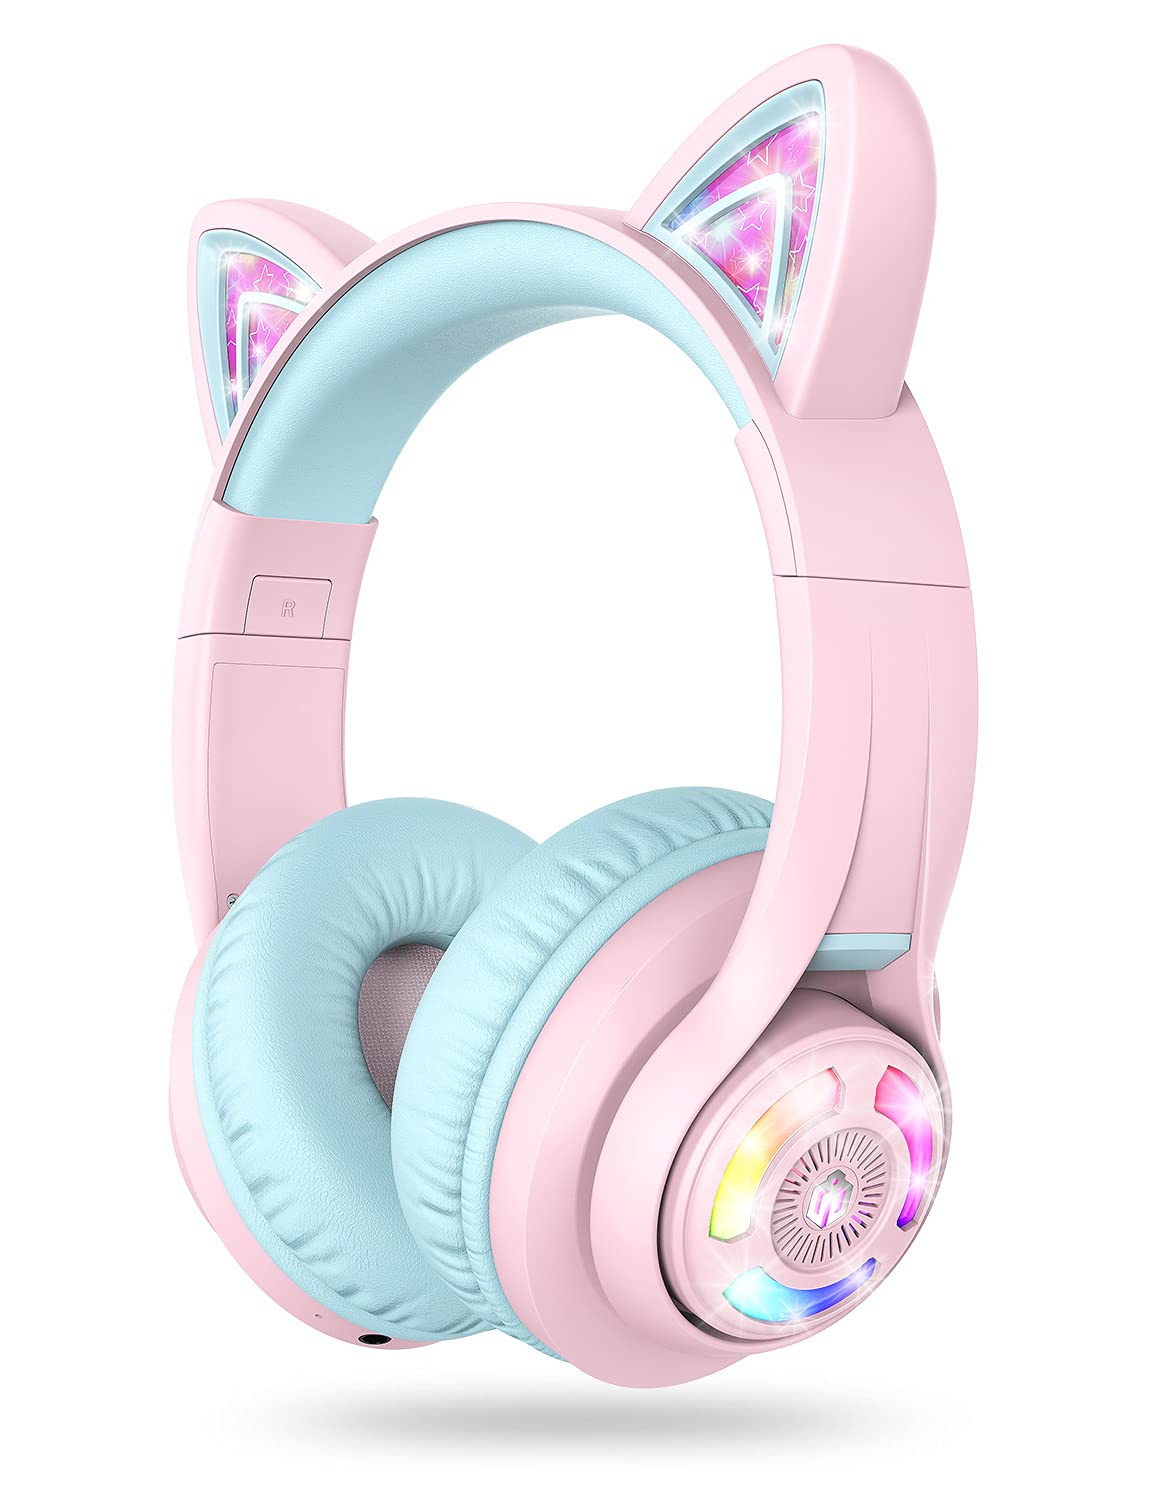 Bezdrátová sluchátka iClever Cat Ear - zvìtšit obrázek